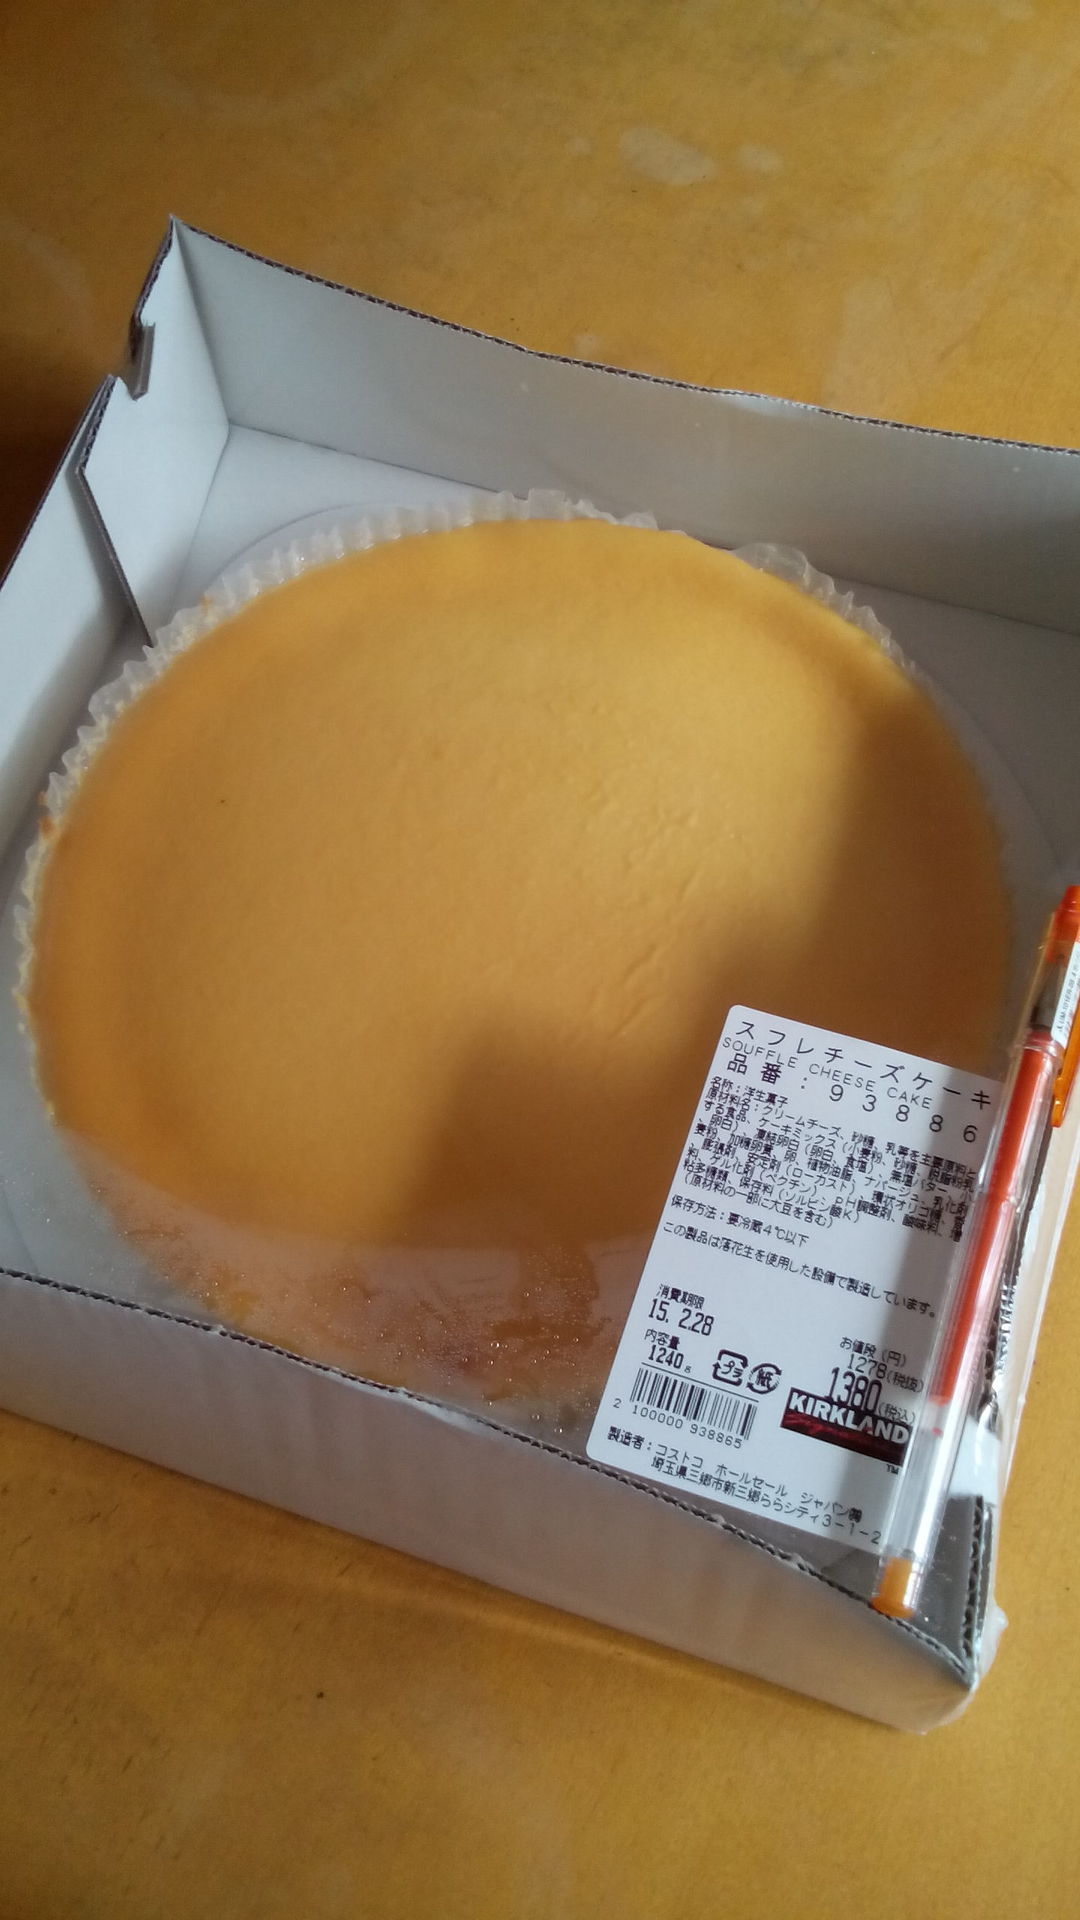 にゃんこ先生のお酒 グルメ情報 コストコのチーズケーキ 値引き販売してました